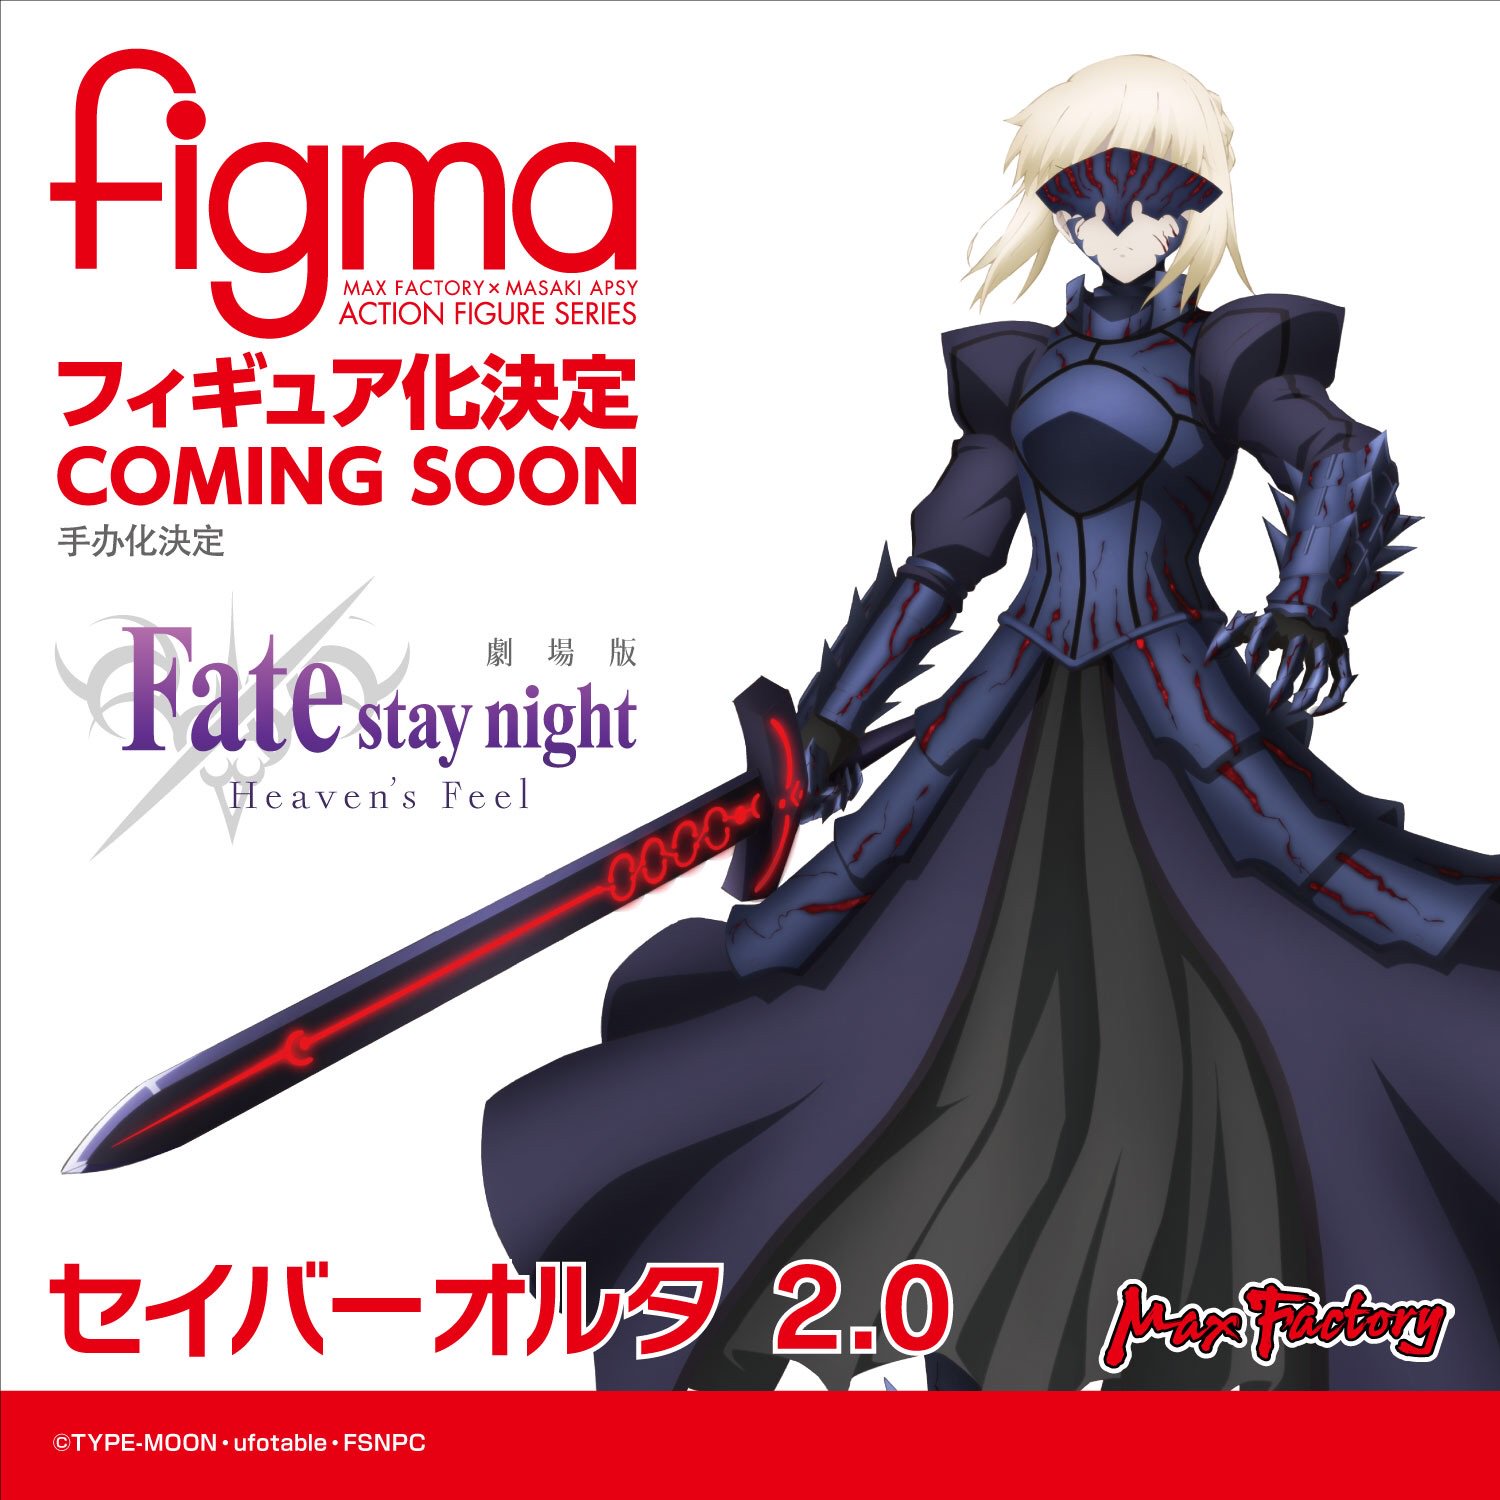 【Fate】figma「セイバーオルタ 2.0」可動フィギュア 制作決定 ｜ fig速-フィギュア・プラモ 新作ホビー情報まとめ